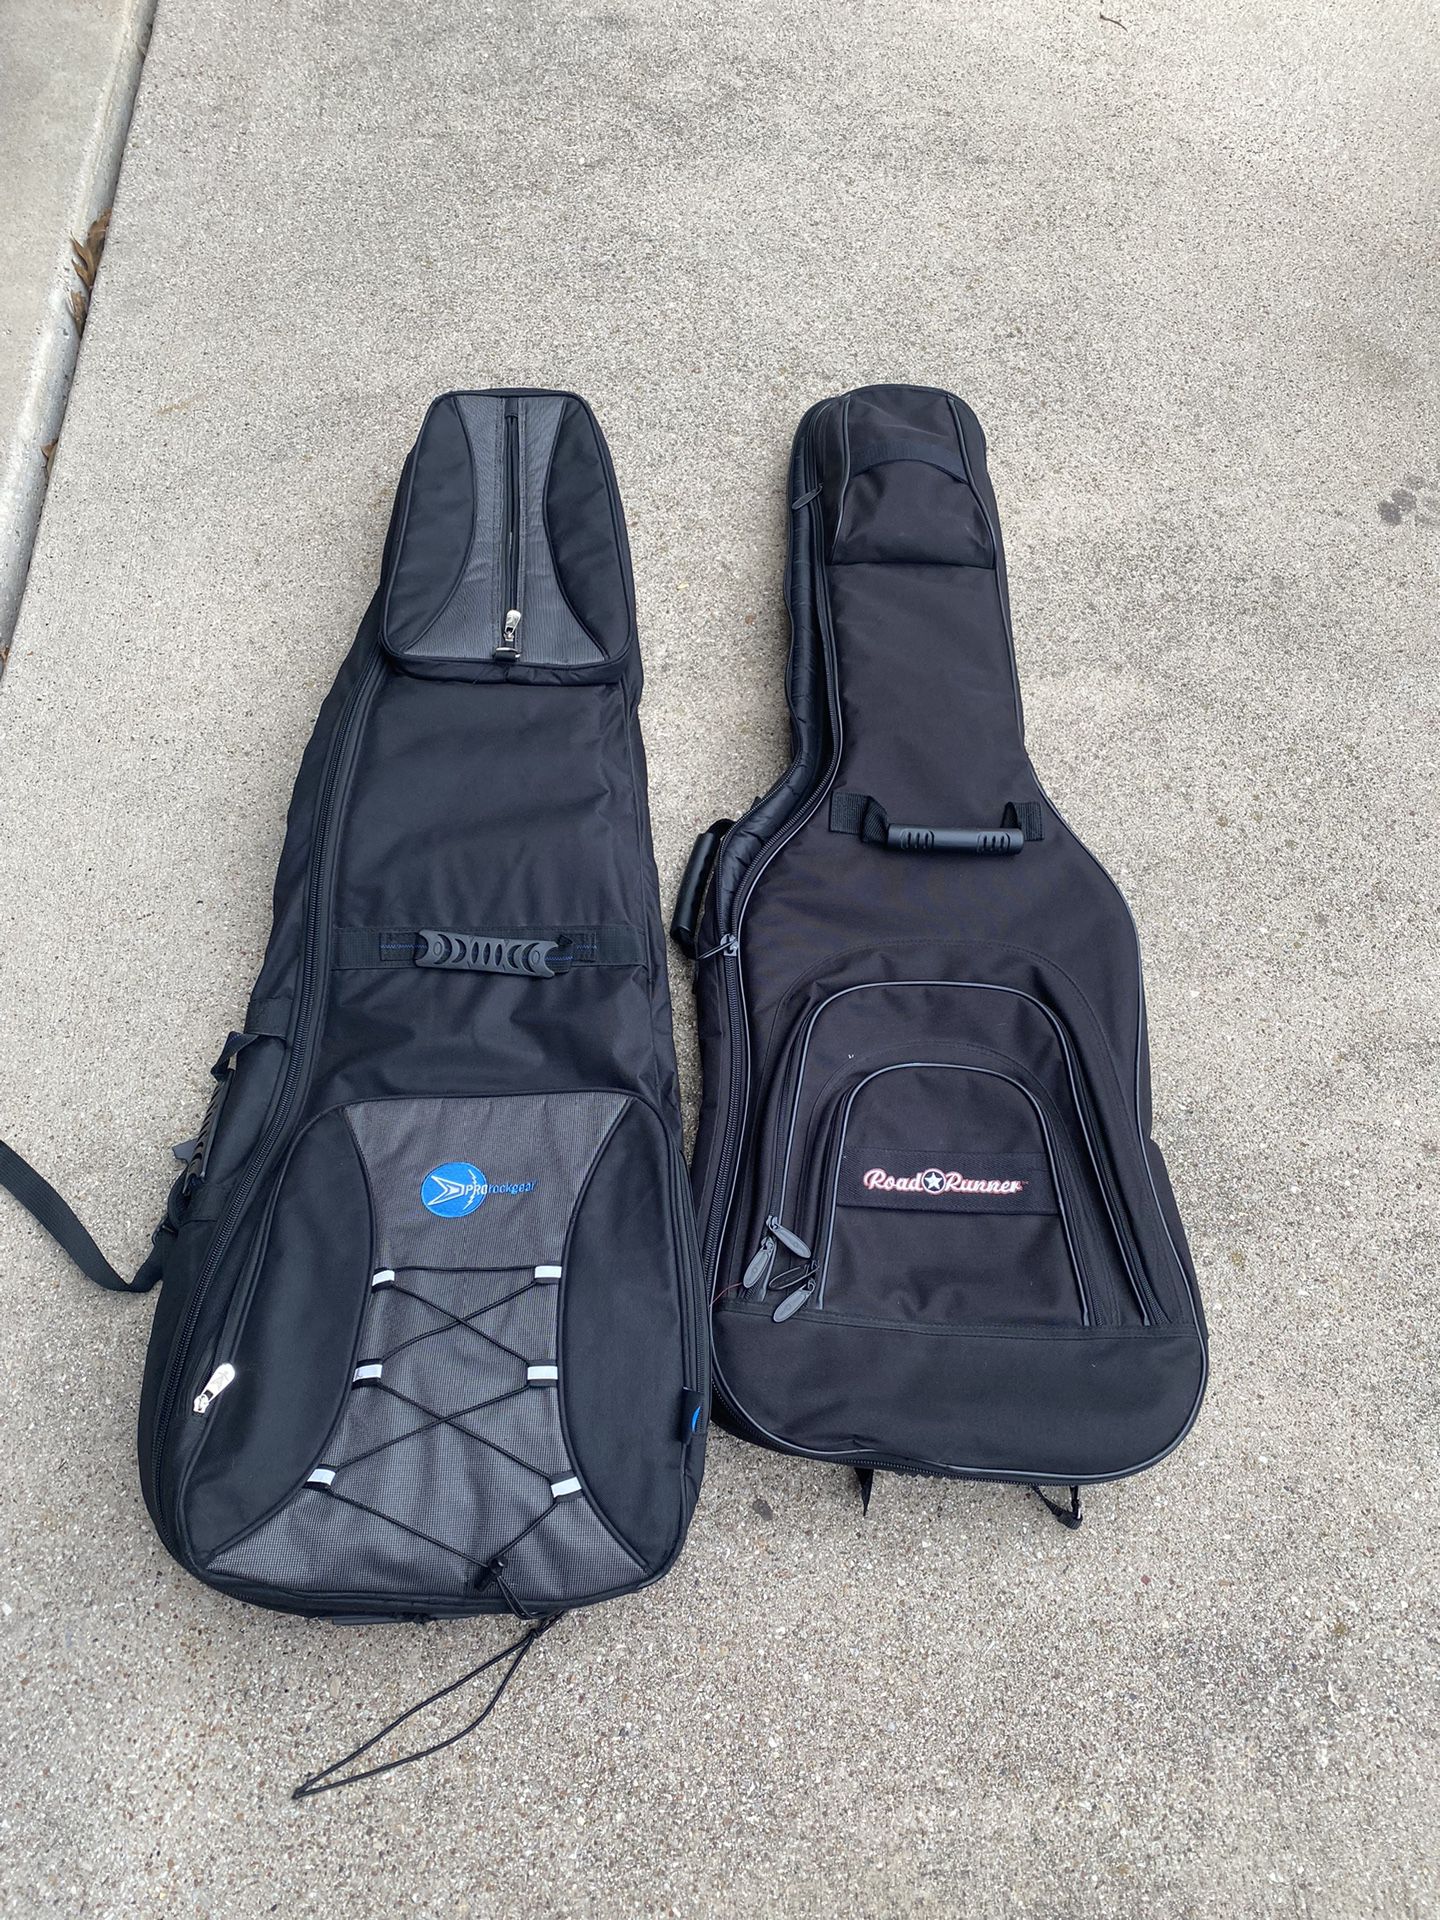 2 soft standard bass guitar travel bags $20 each